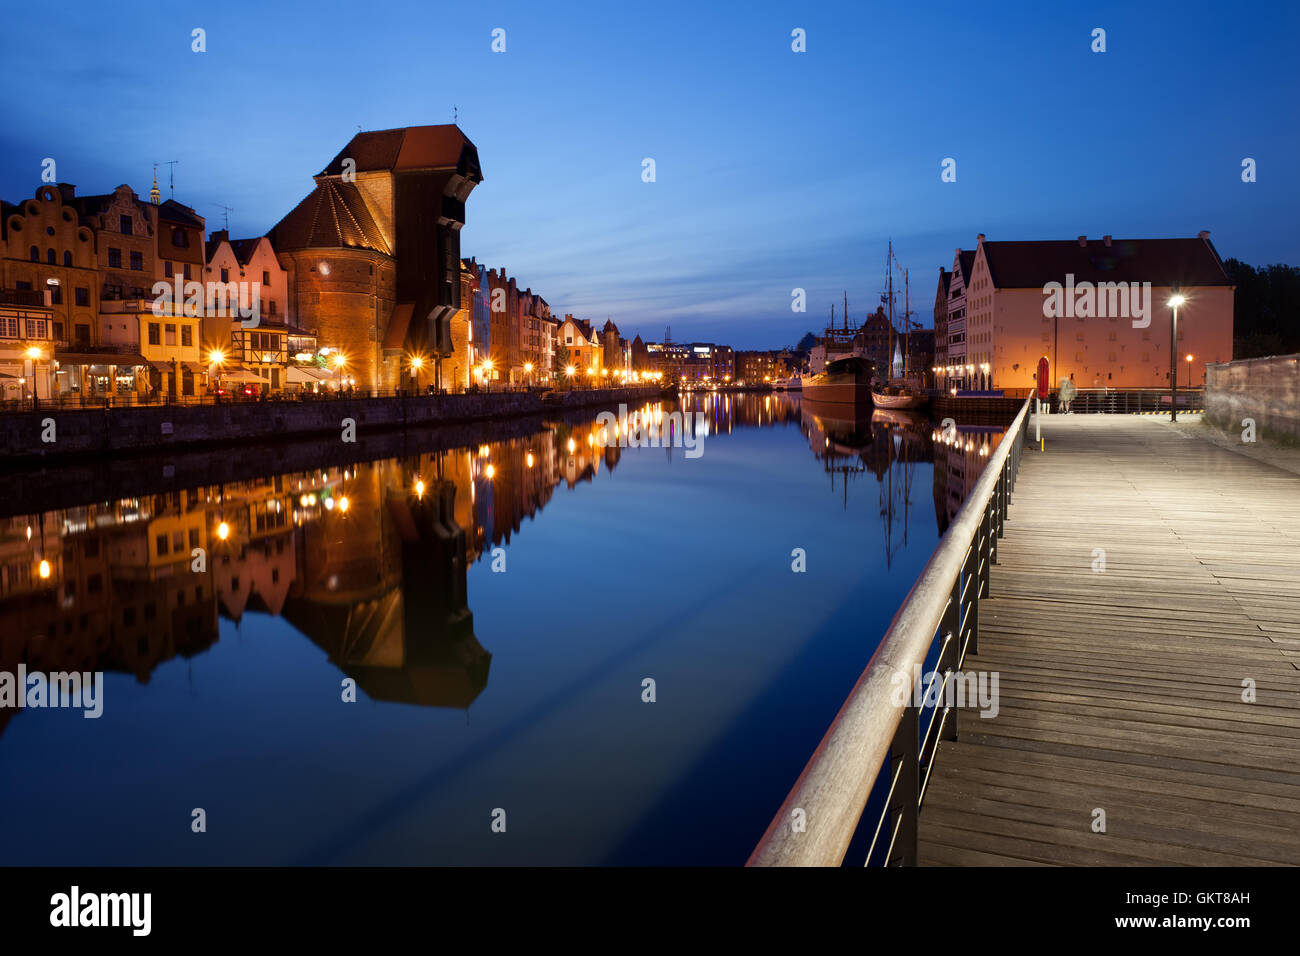 Ville de Gdansk en Pologne par nuit, les toits de la vieille ville, une promenade promenade le long de la rivière Motlawa Banque D'Images